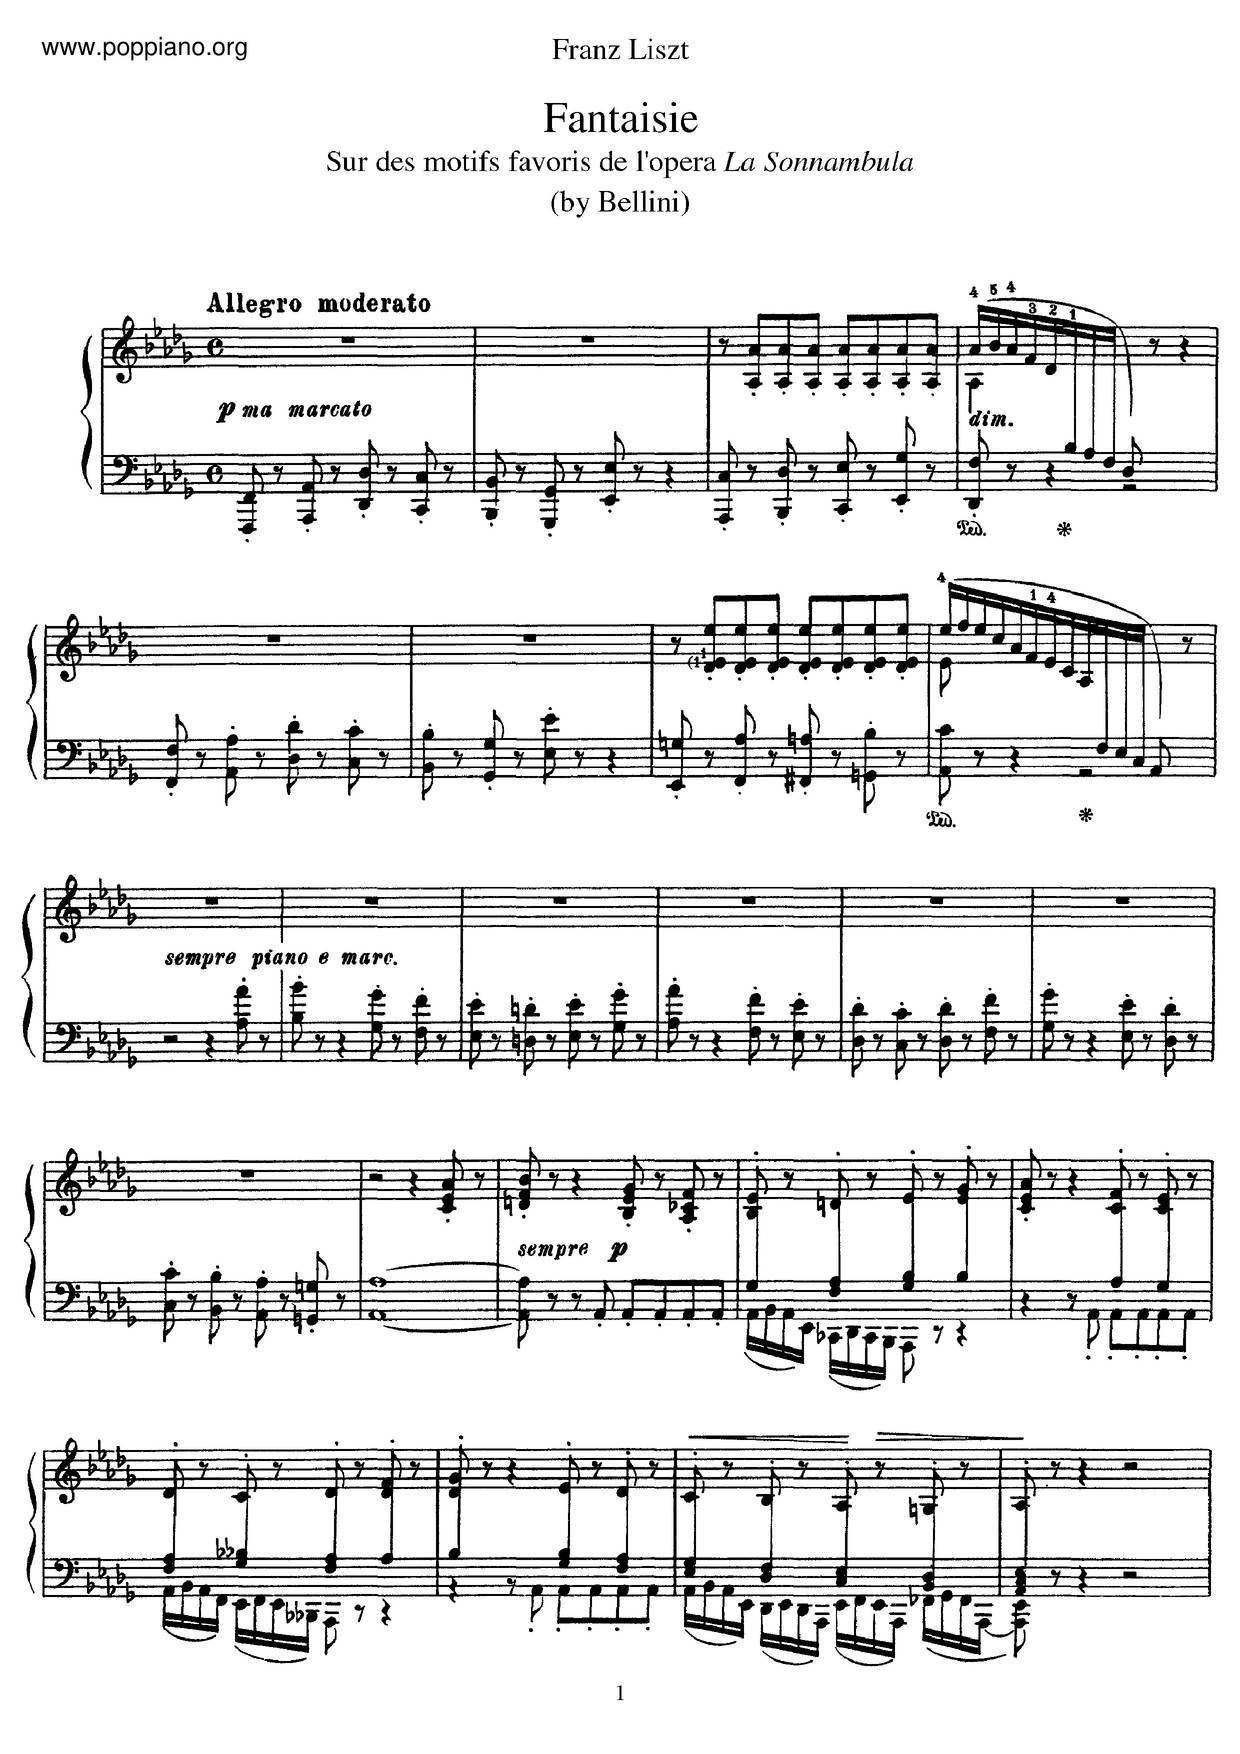 Fantaisie Sur Des Motifs De L'opéra La Sonnambula De Bellini, S.393 Score